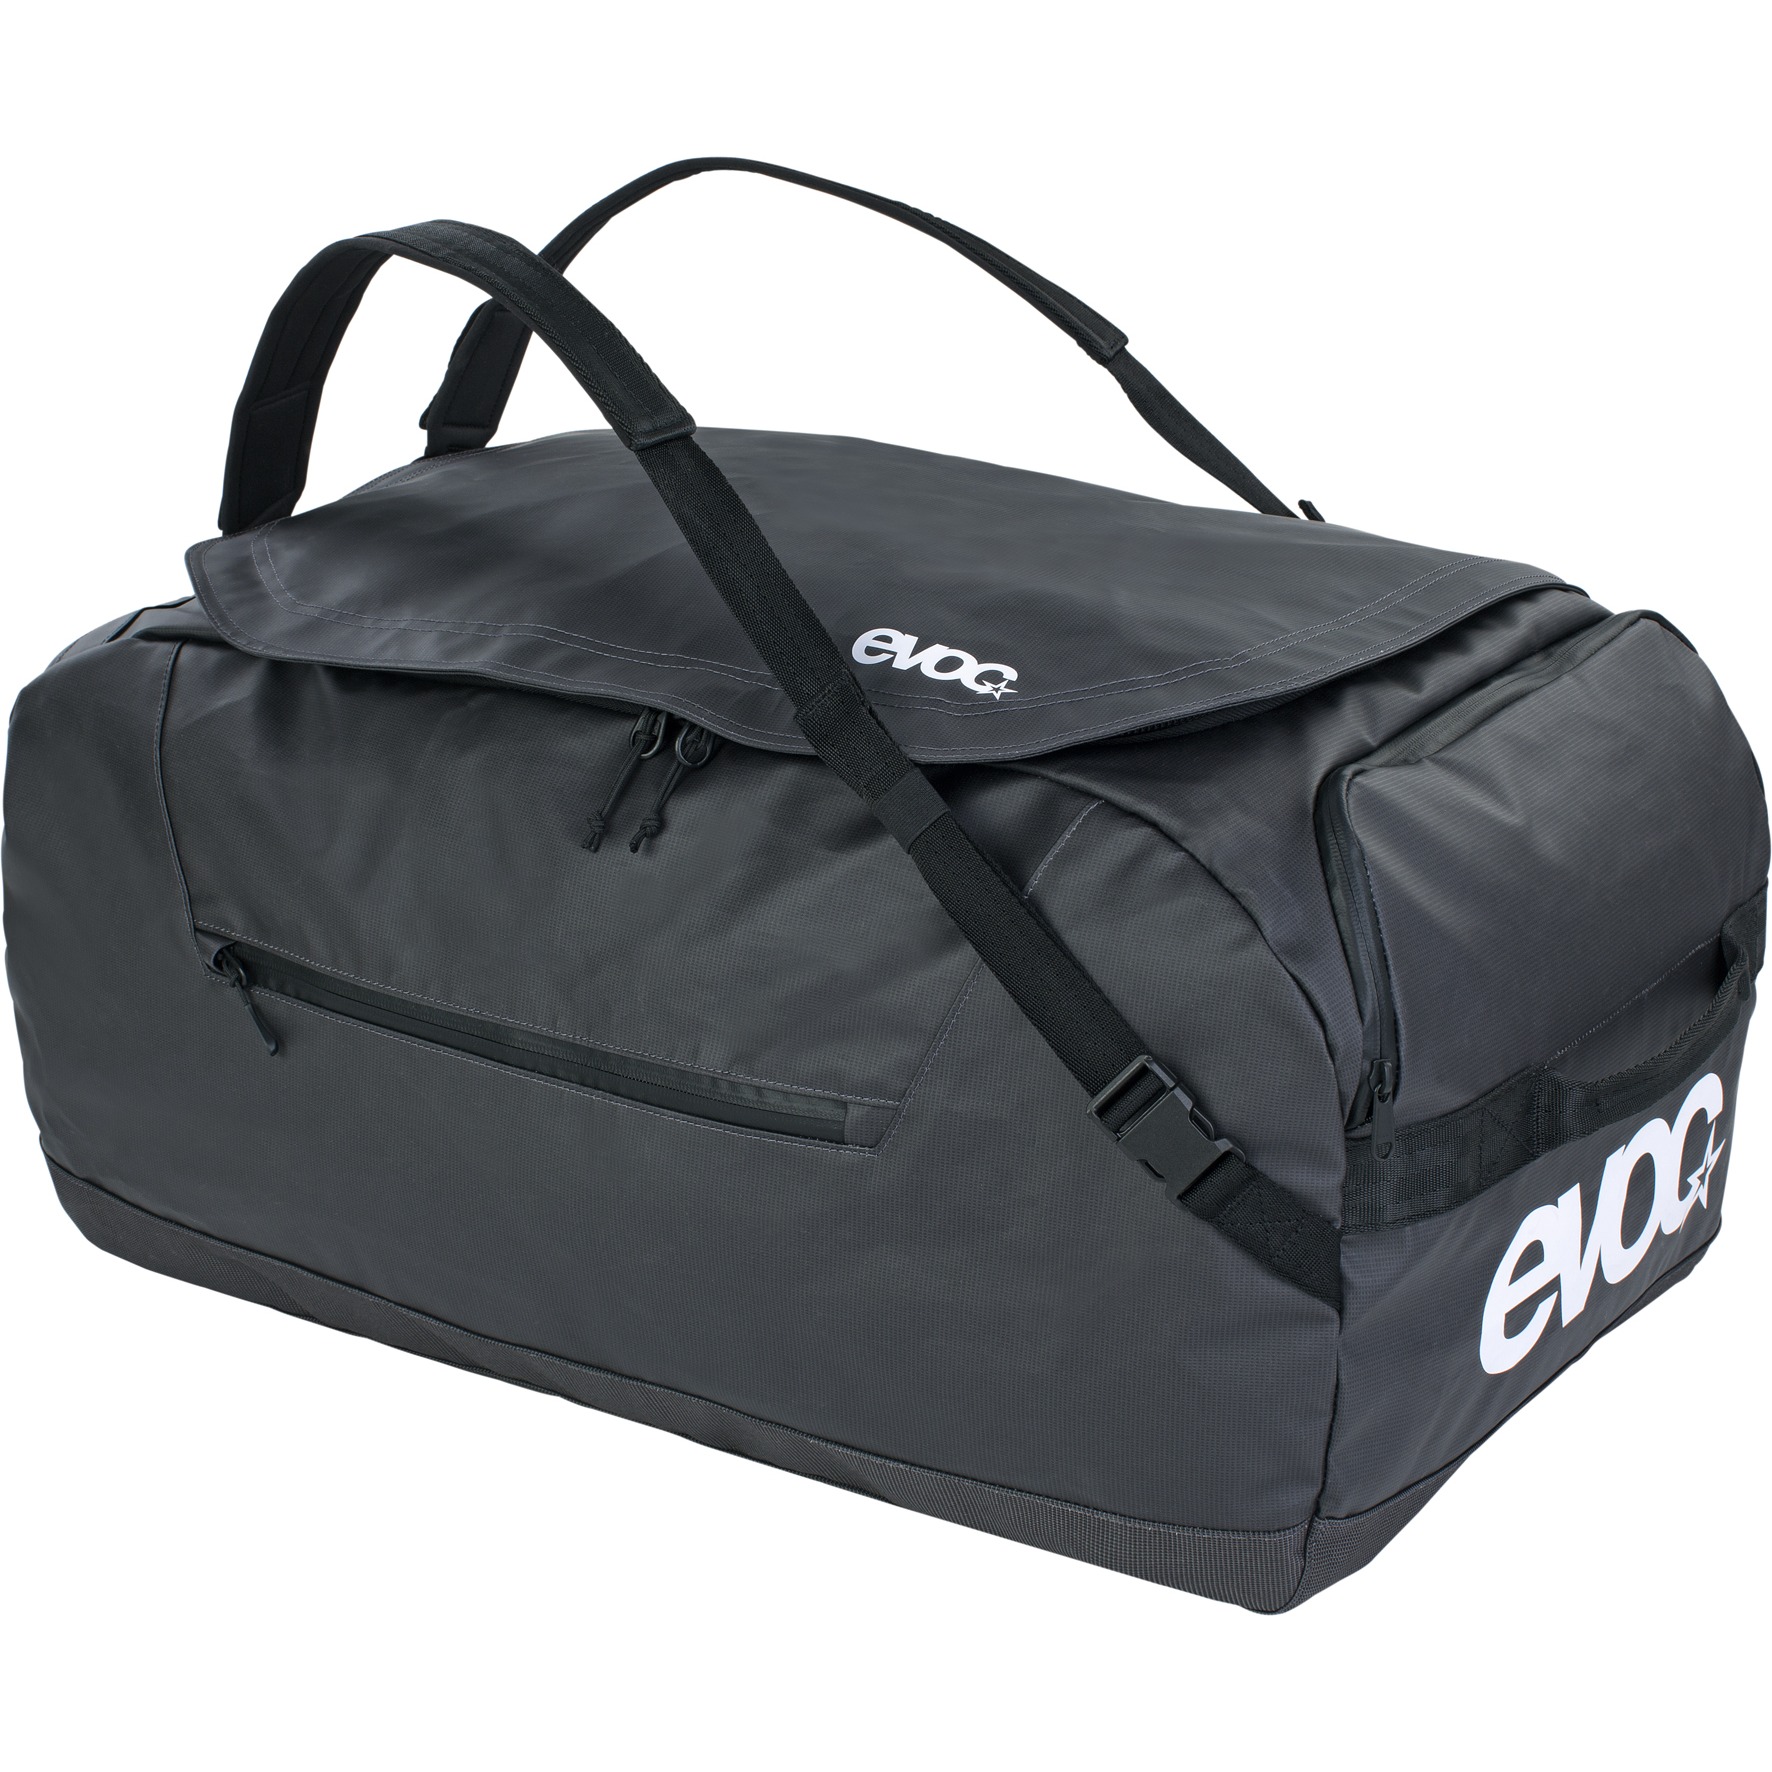 Bild von EVOC Duffle Bag 100L Reisetasche - Carbon Grey/Black